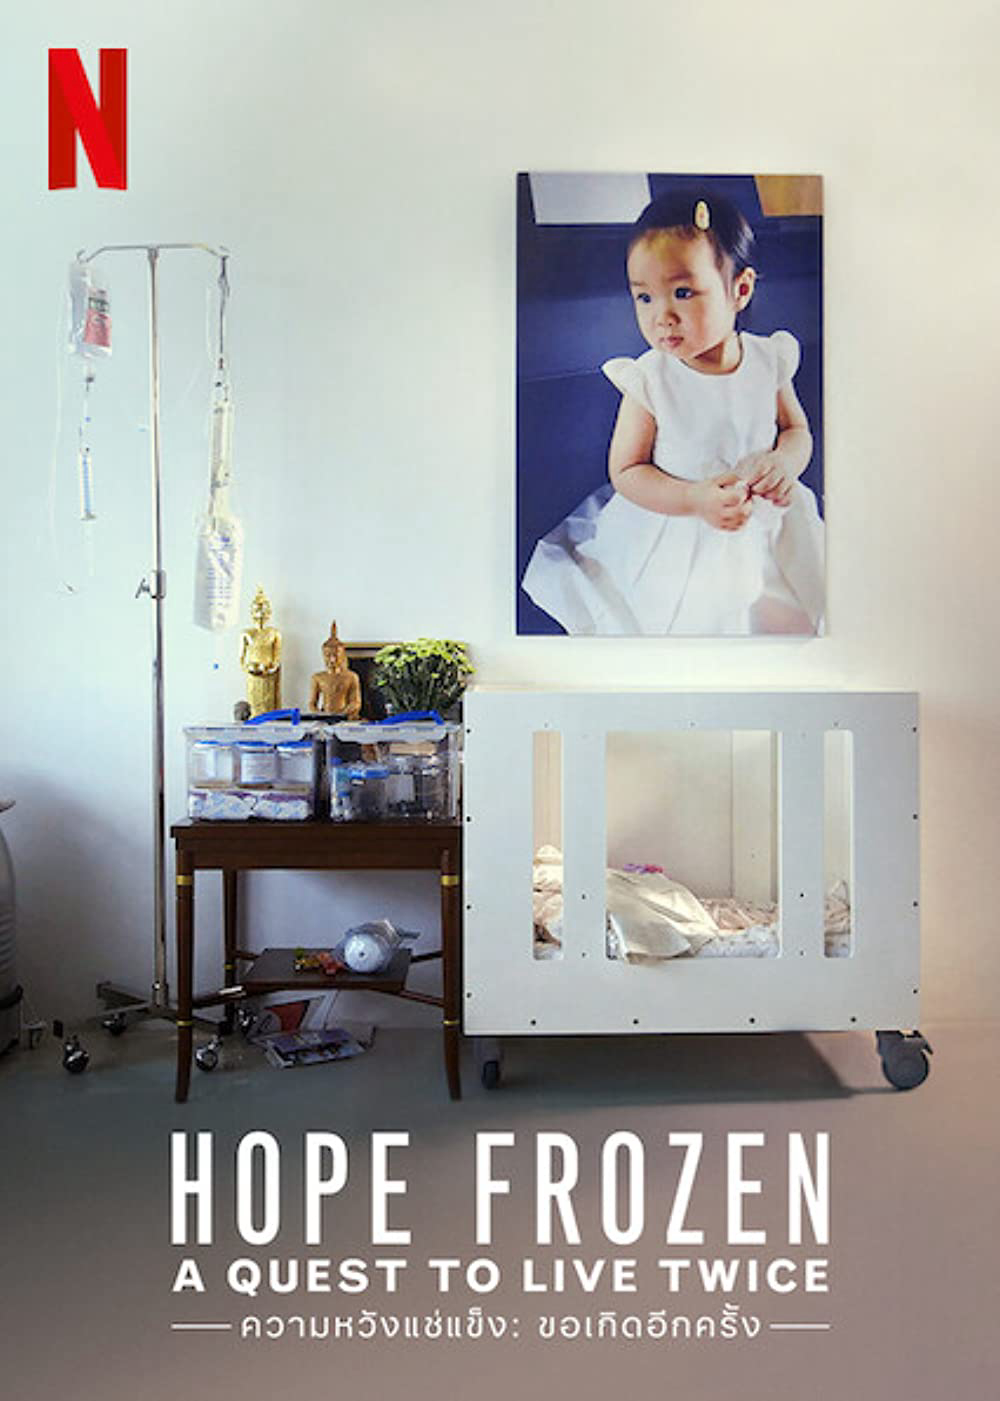 Đóng băng hy vọng: Cơ hội sống lần hai - Hope Frozen: A Quest to Live Twice